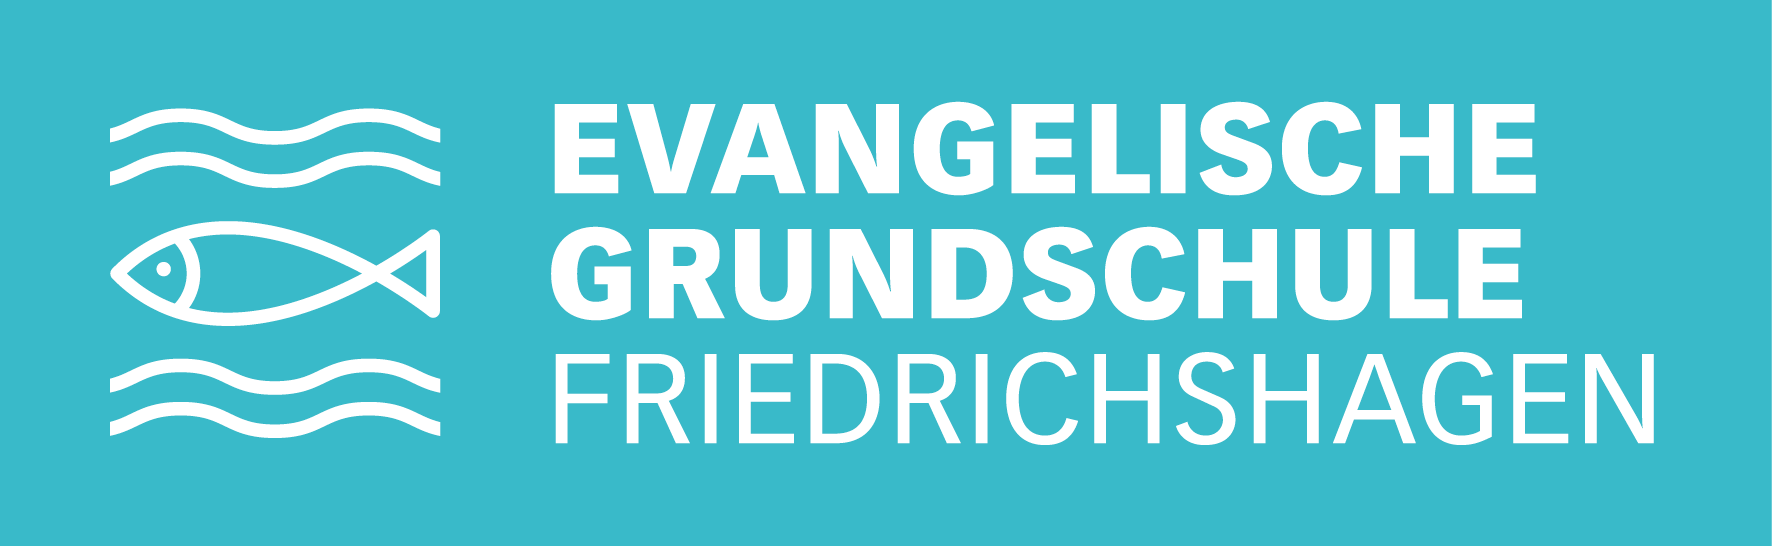 Evangelische Grundschule Friedrichshagen